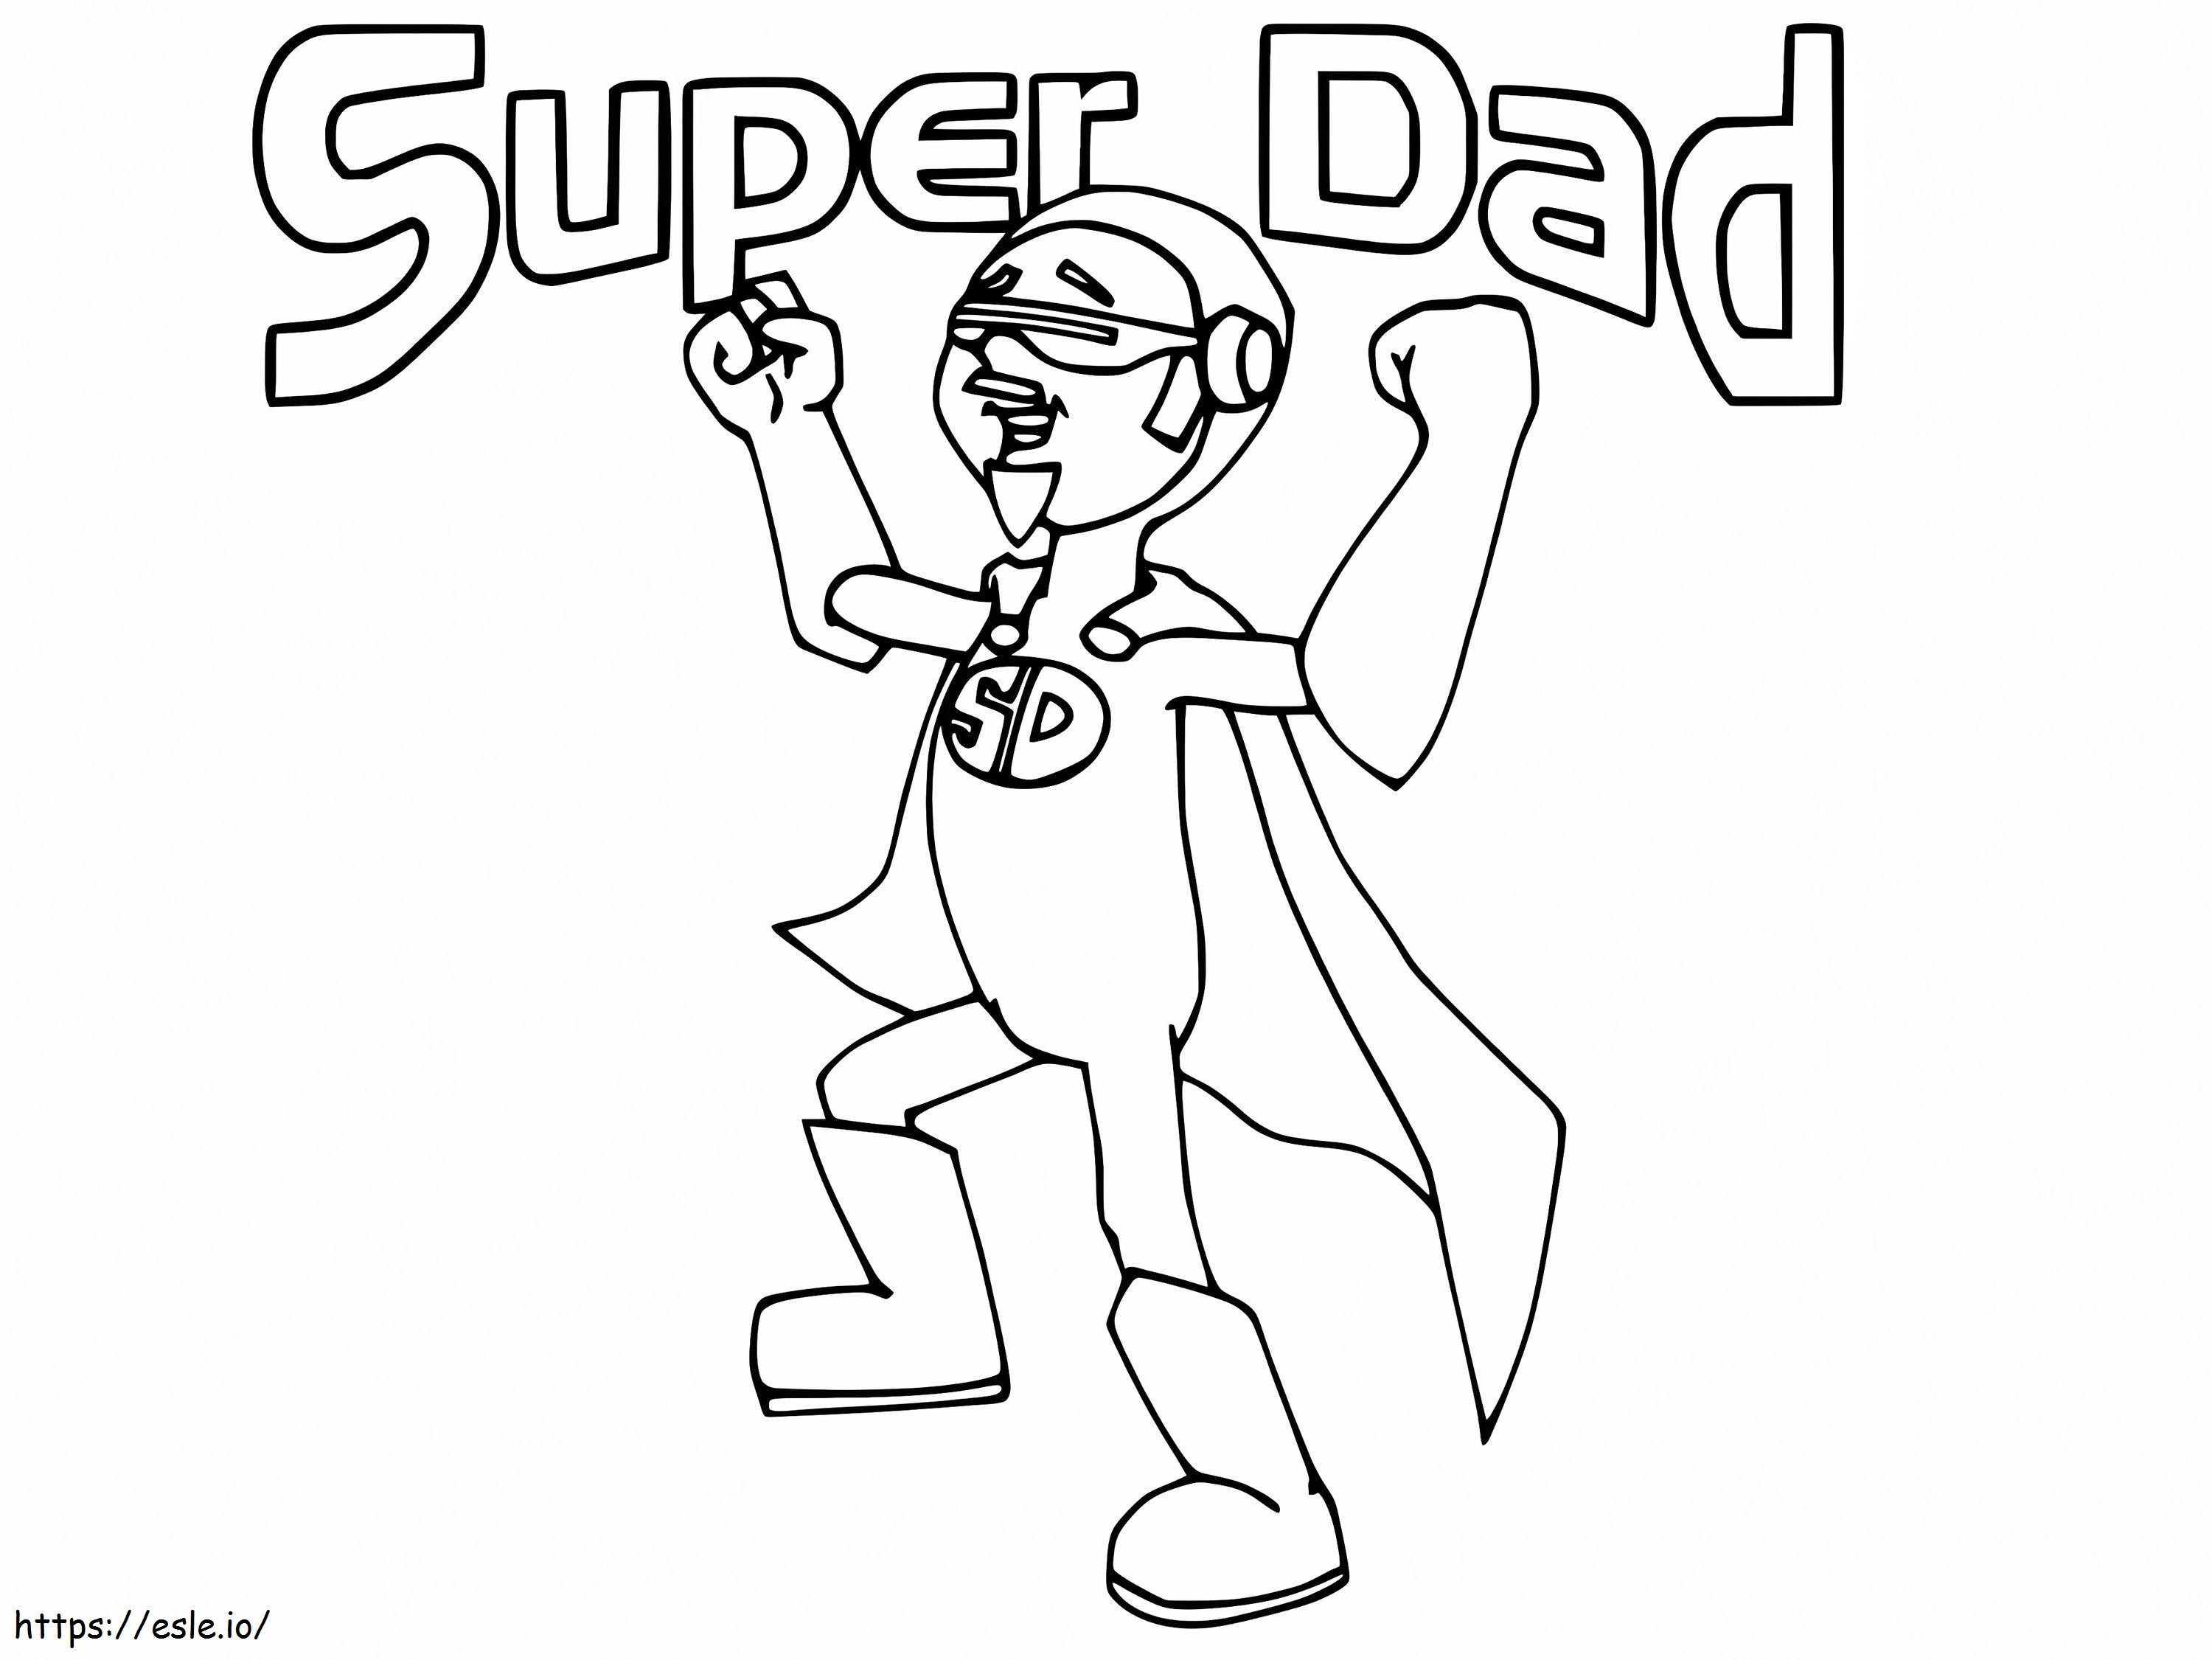 Super Dad tulostettavaksi värityskuva